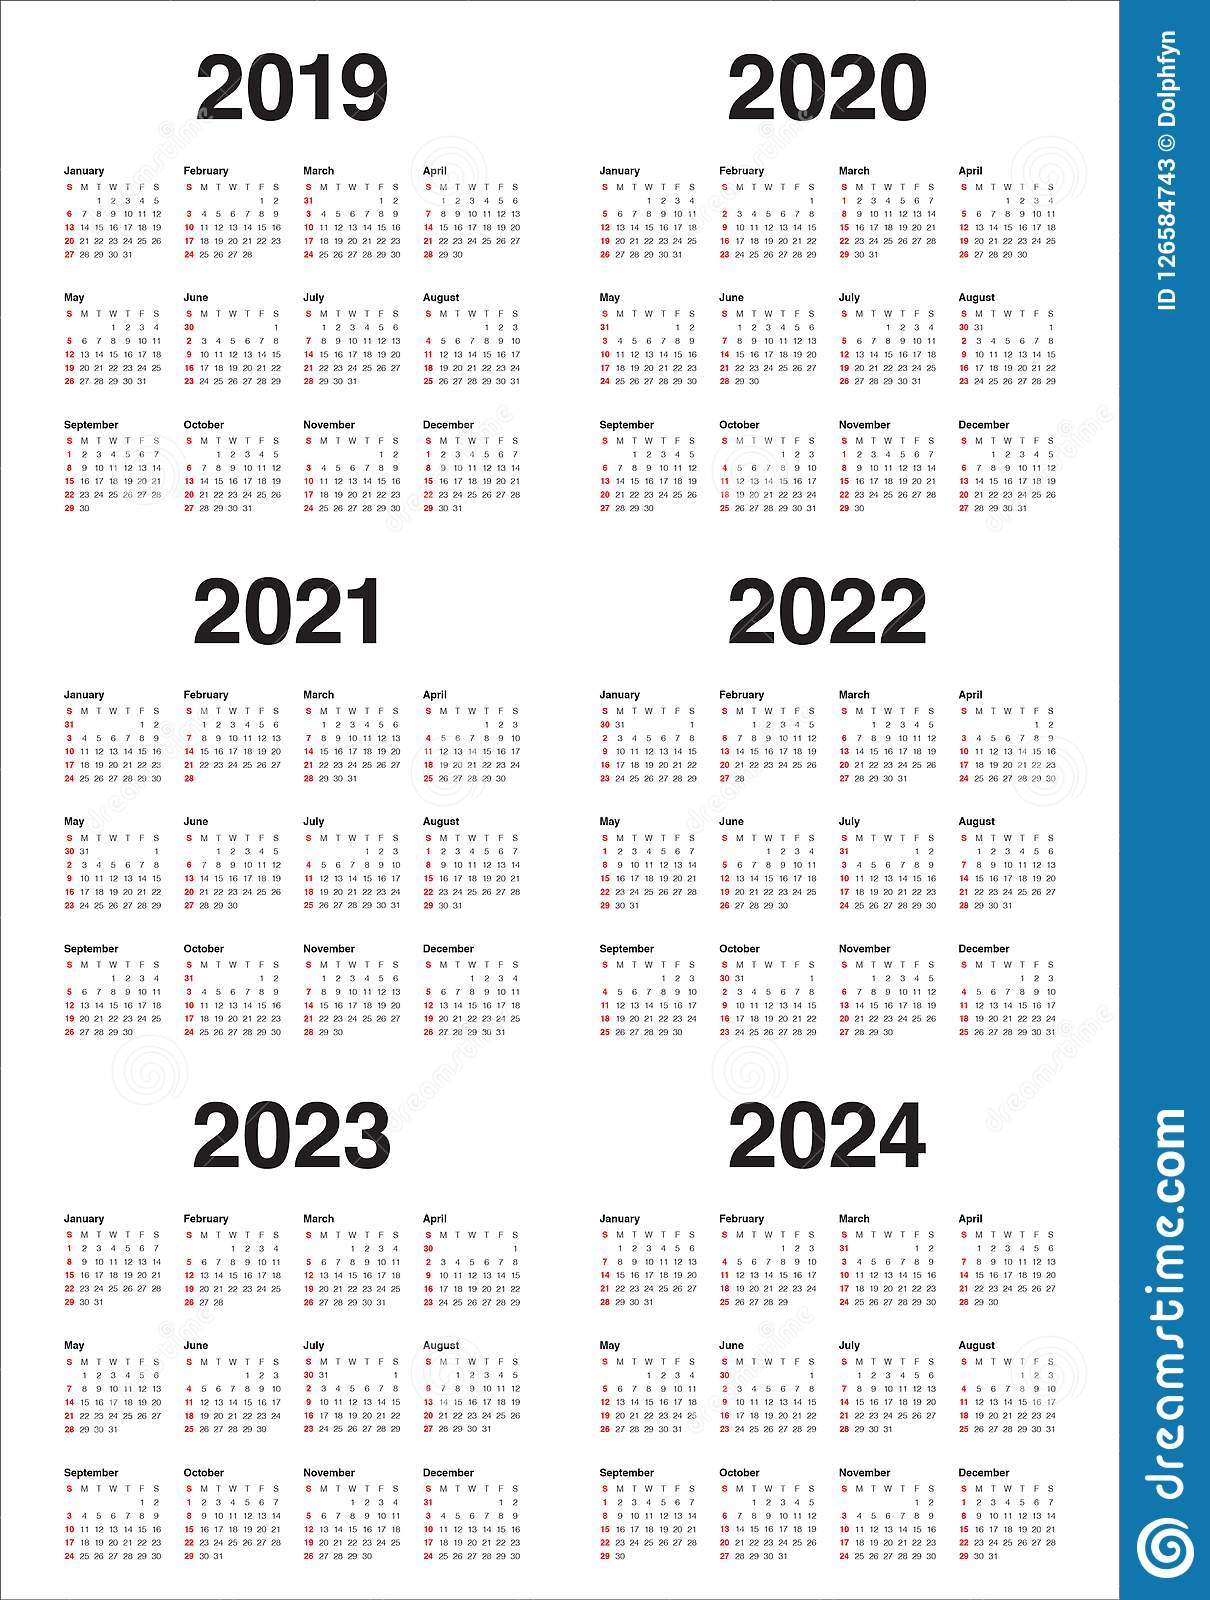 Bcps Calendar 2023 2024 Printable Calendar 2023 vrogue.co